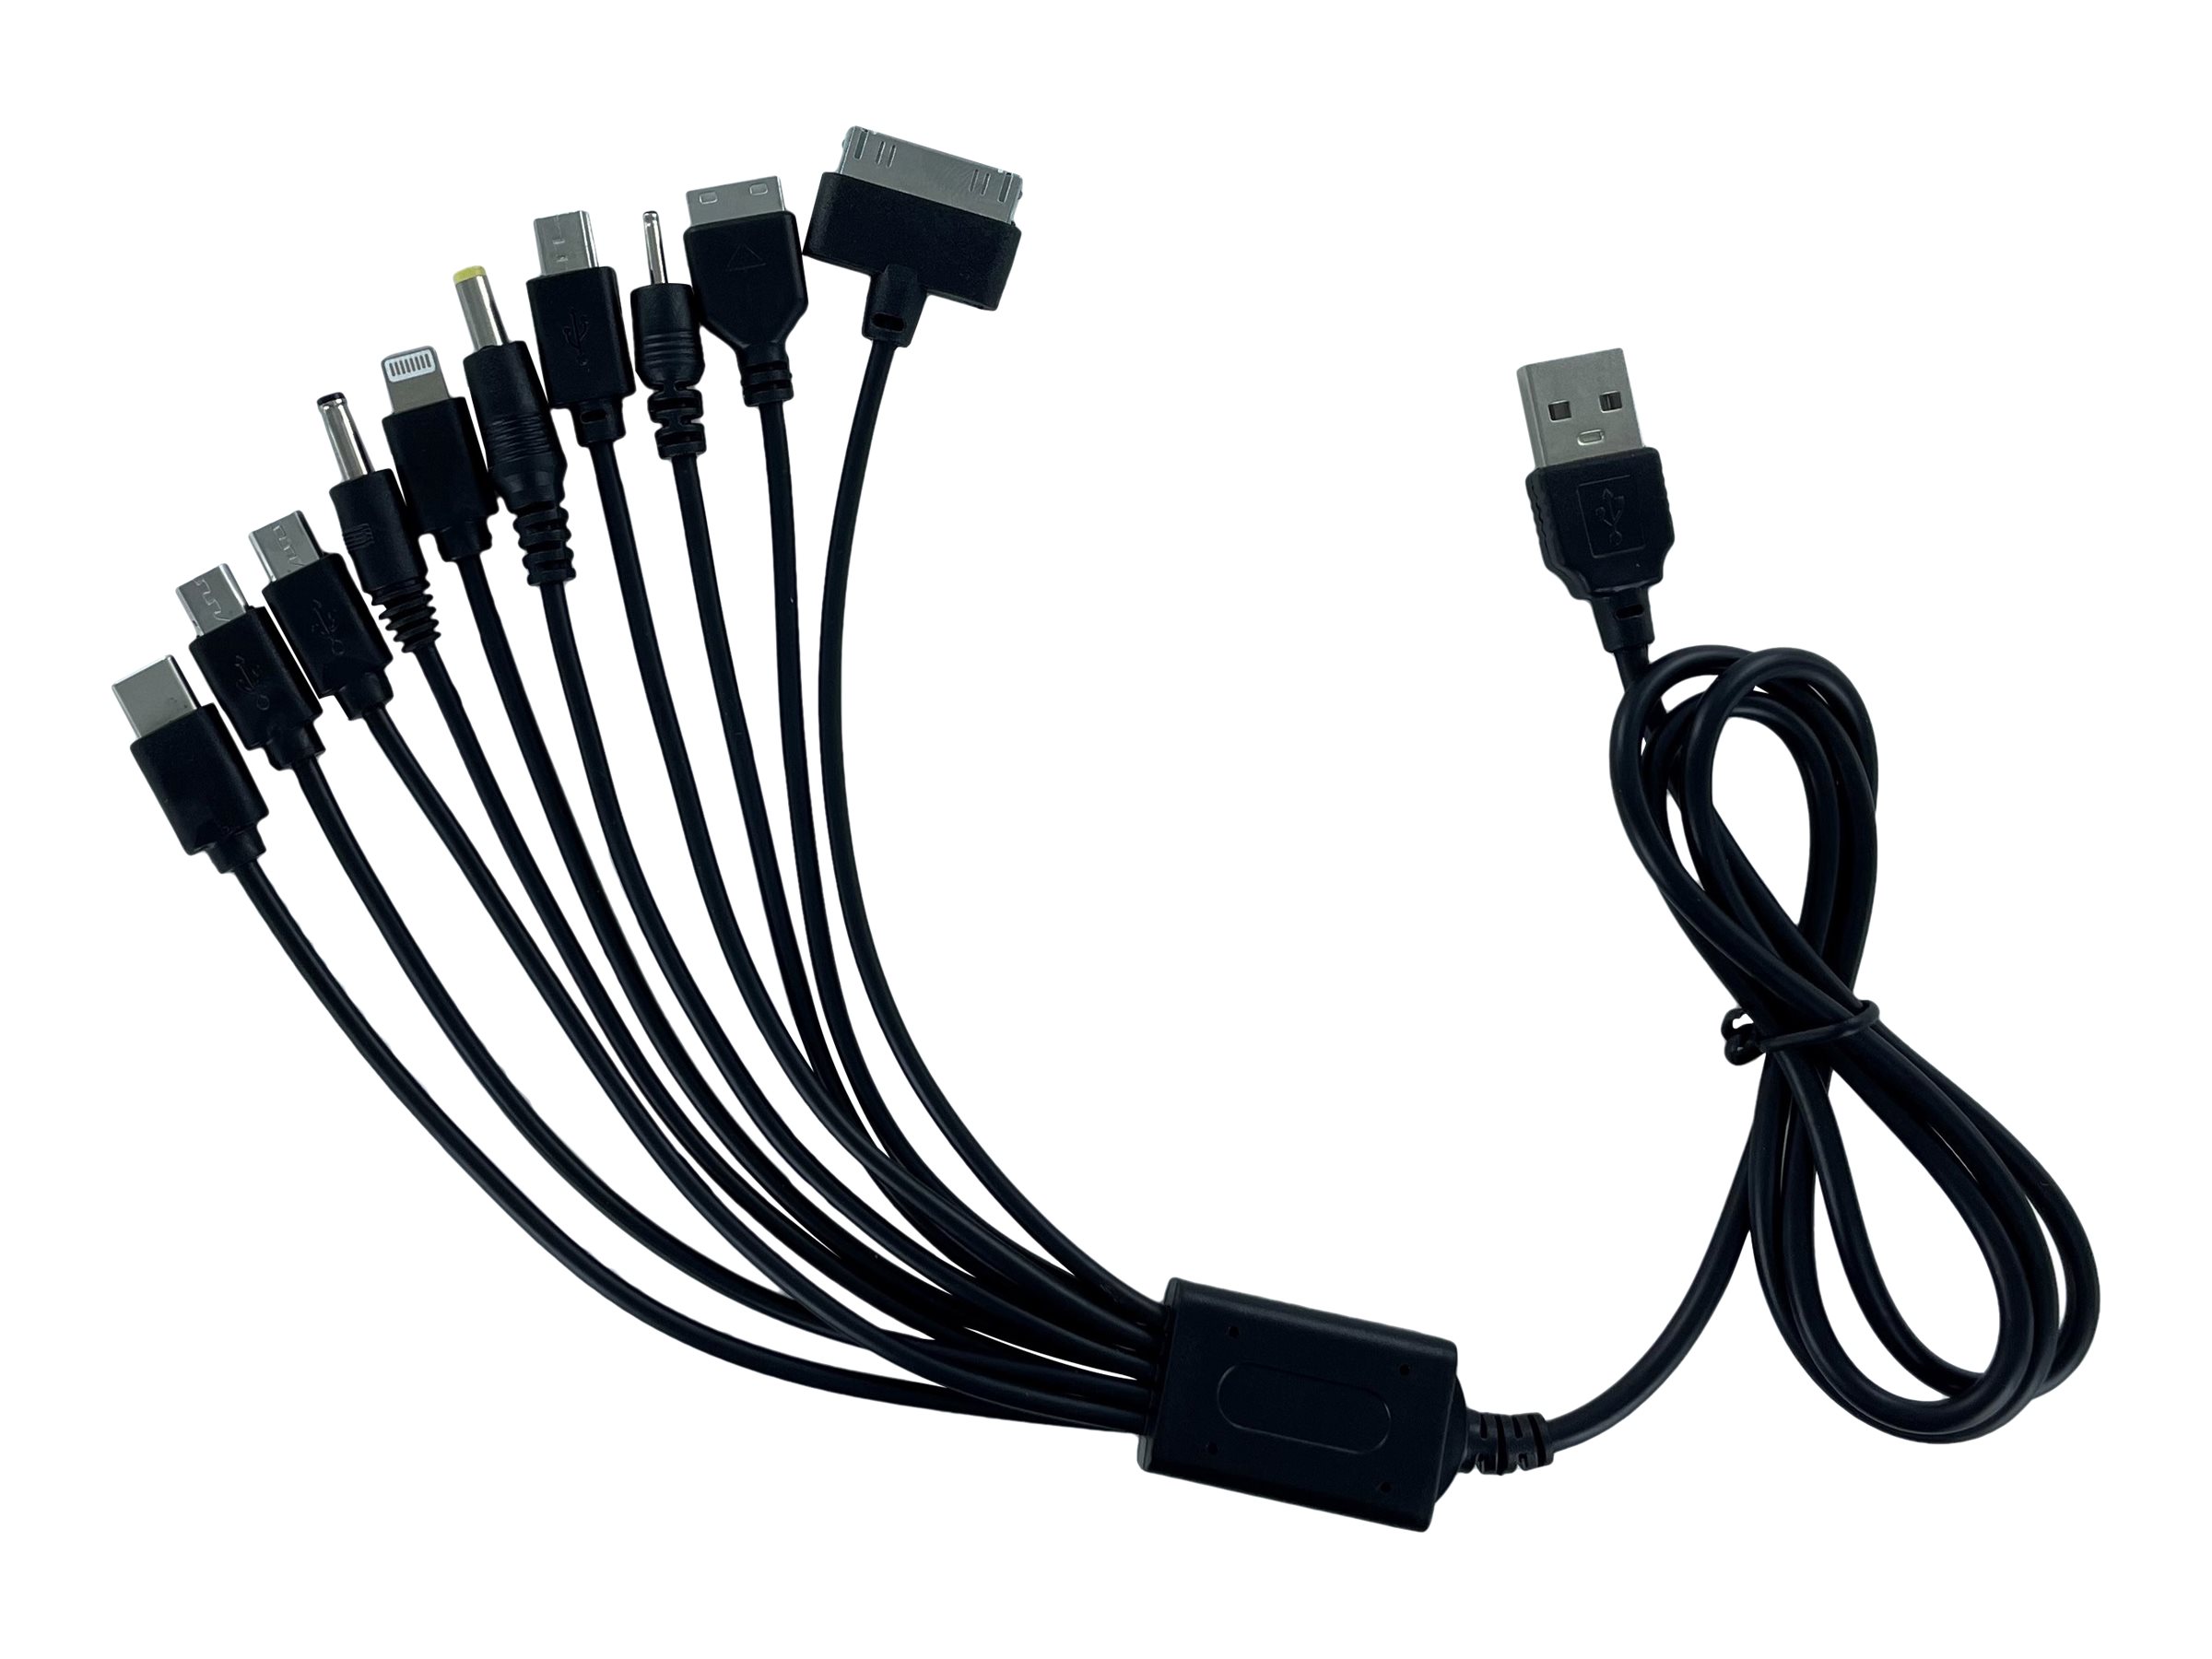 DLH DY-TU1975B - Câble de charge uniquement - USB (alimentation uniquement) mâle pour mini USB type B, Micro-USB Type B, Apple Lightning (alimentation uniquement), 10 broches USB-C - 1 m - noir - DY-TU1975B - Câbles pour téléphone portable